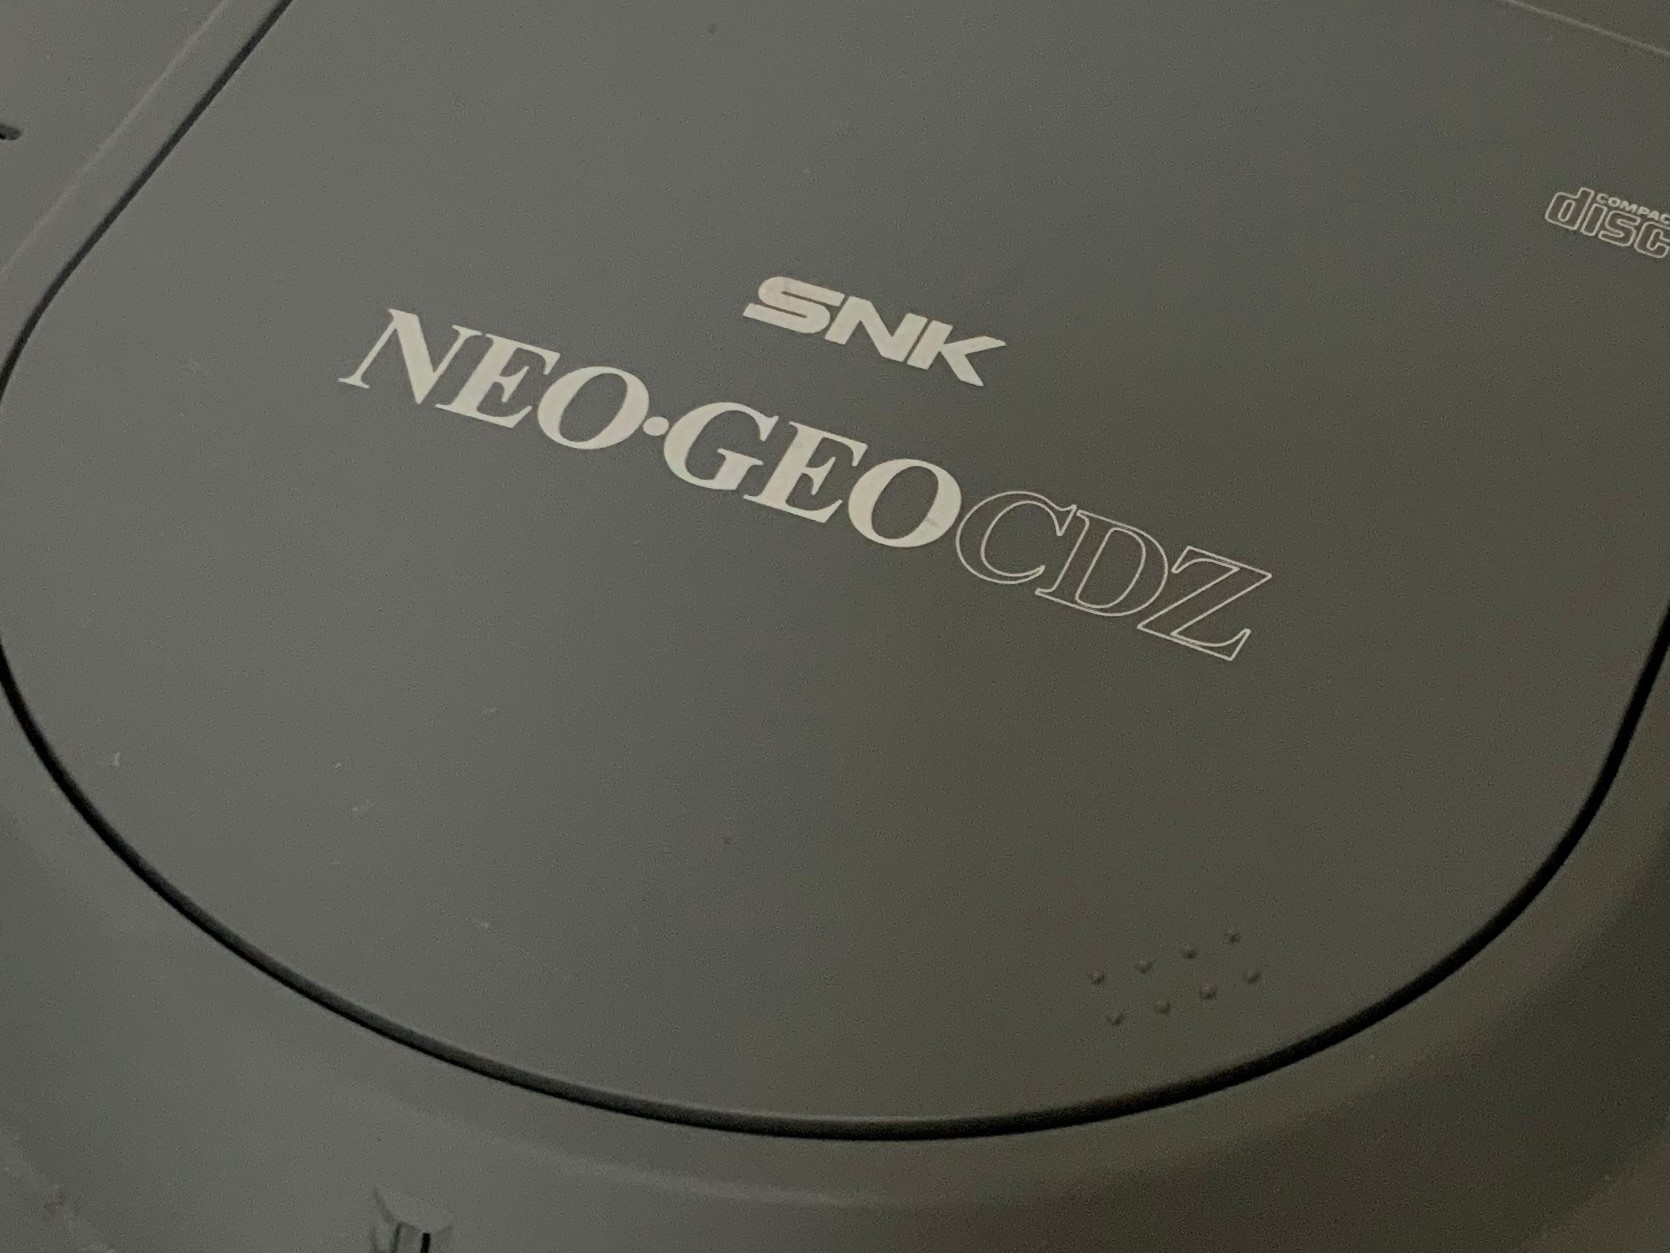 NEO GEO CD ネオジオCD ソフト19本セット (全て帯付き)